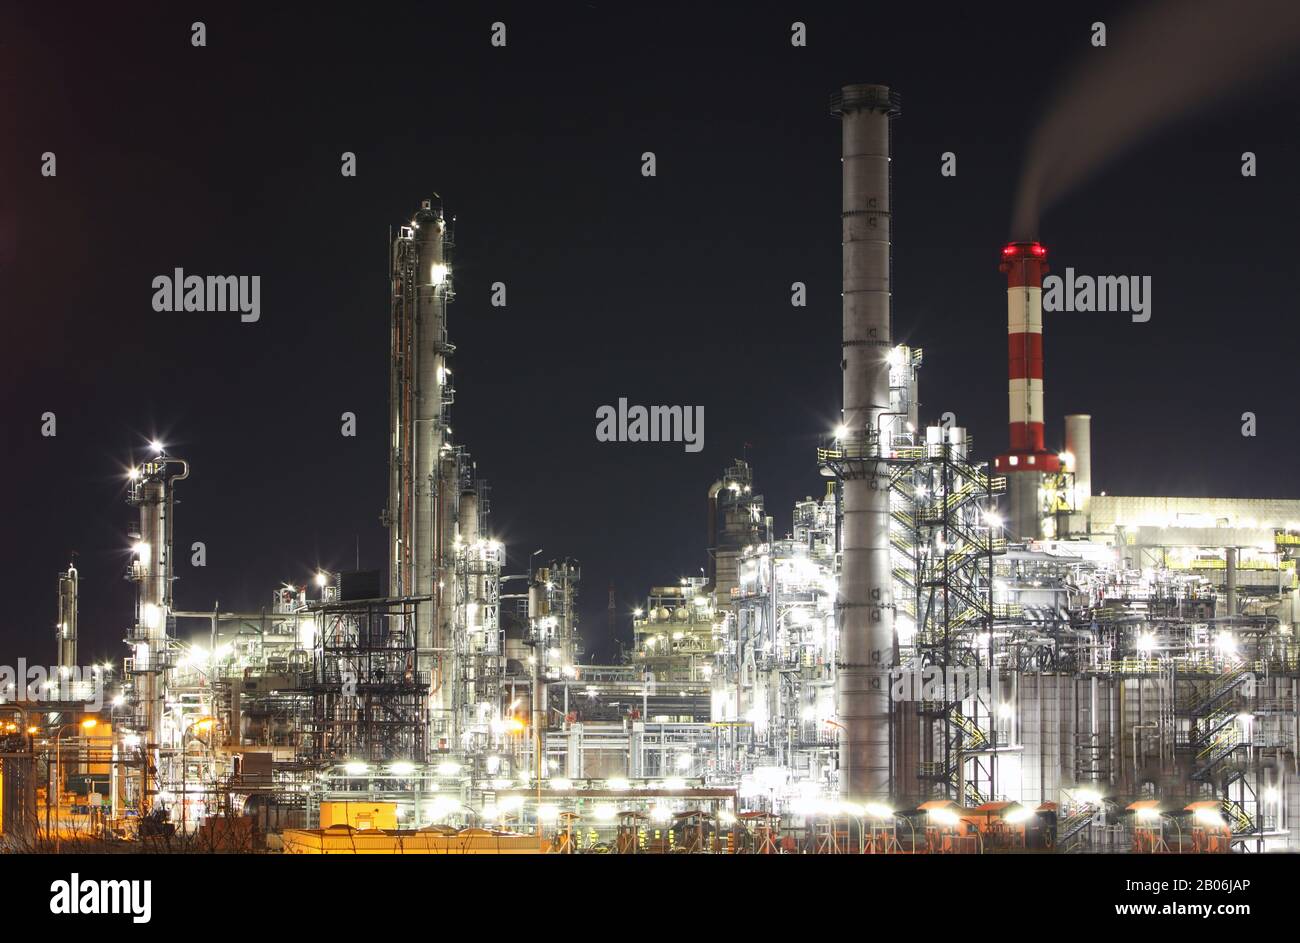 Pétrole et gaz - raffinerie au crépuscule - usine - usine pétrochimique Banque D'Images